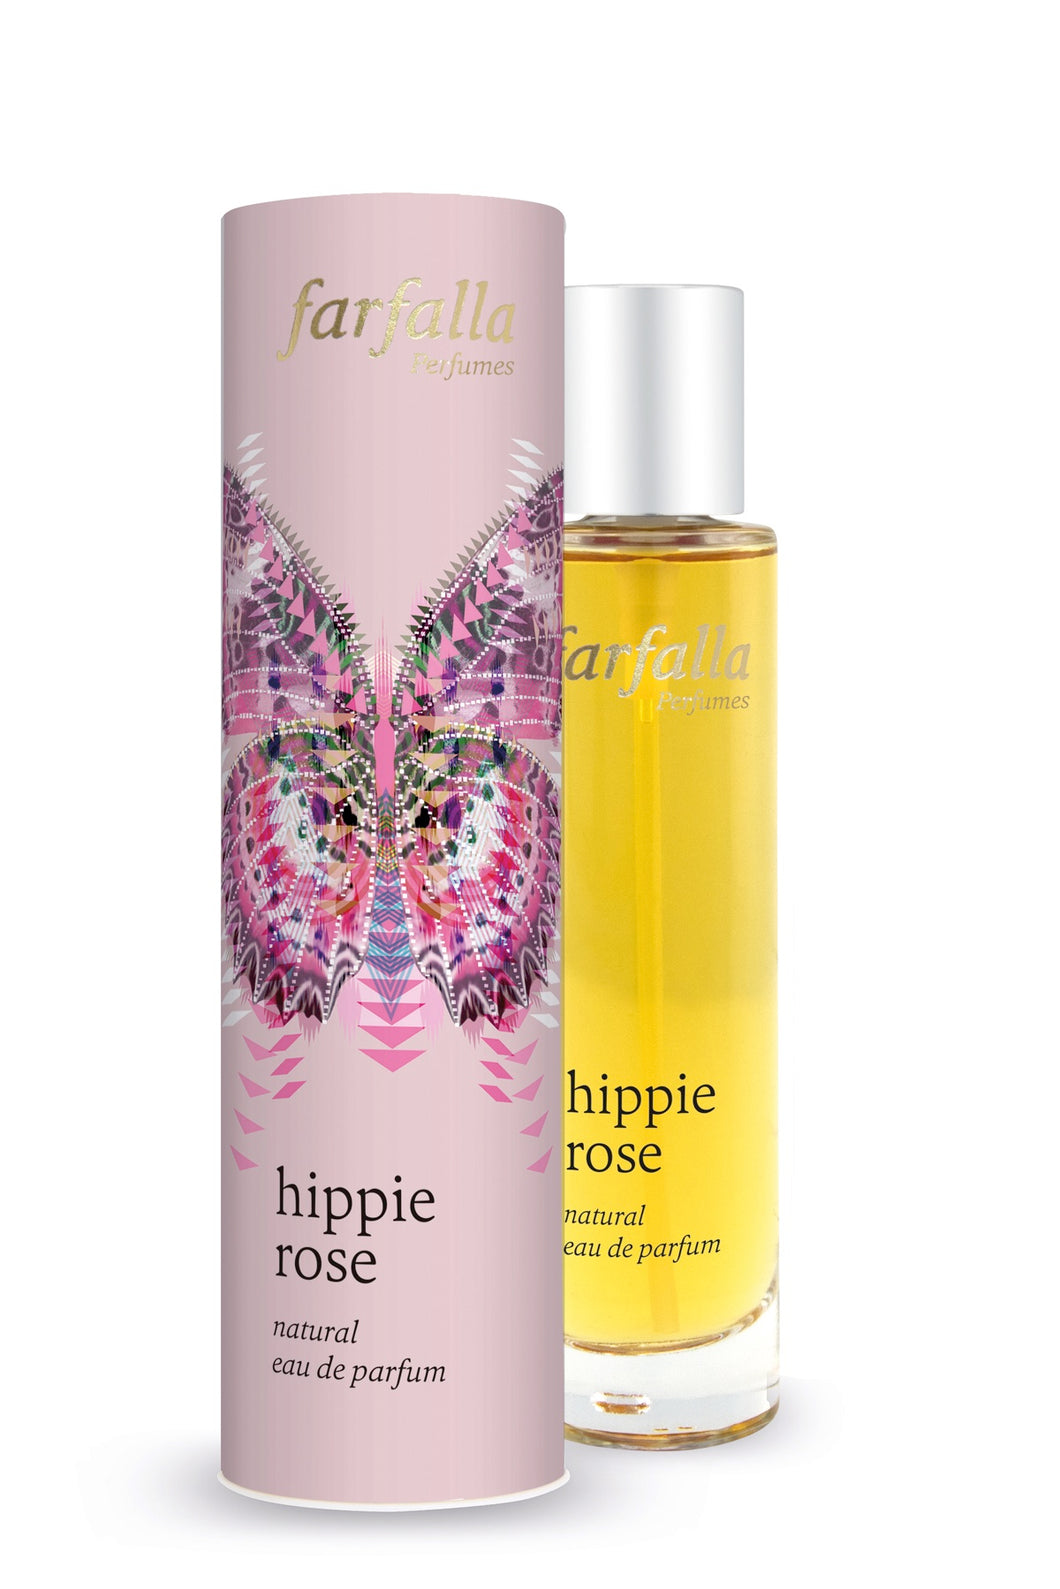 hippie rose, natural eau de parfum, 50ml